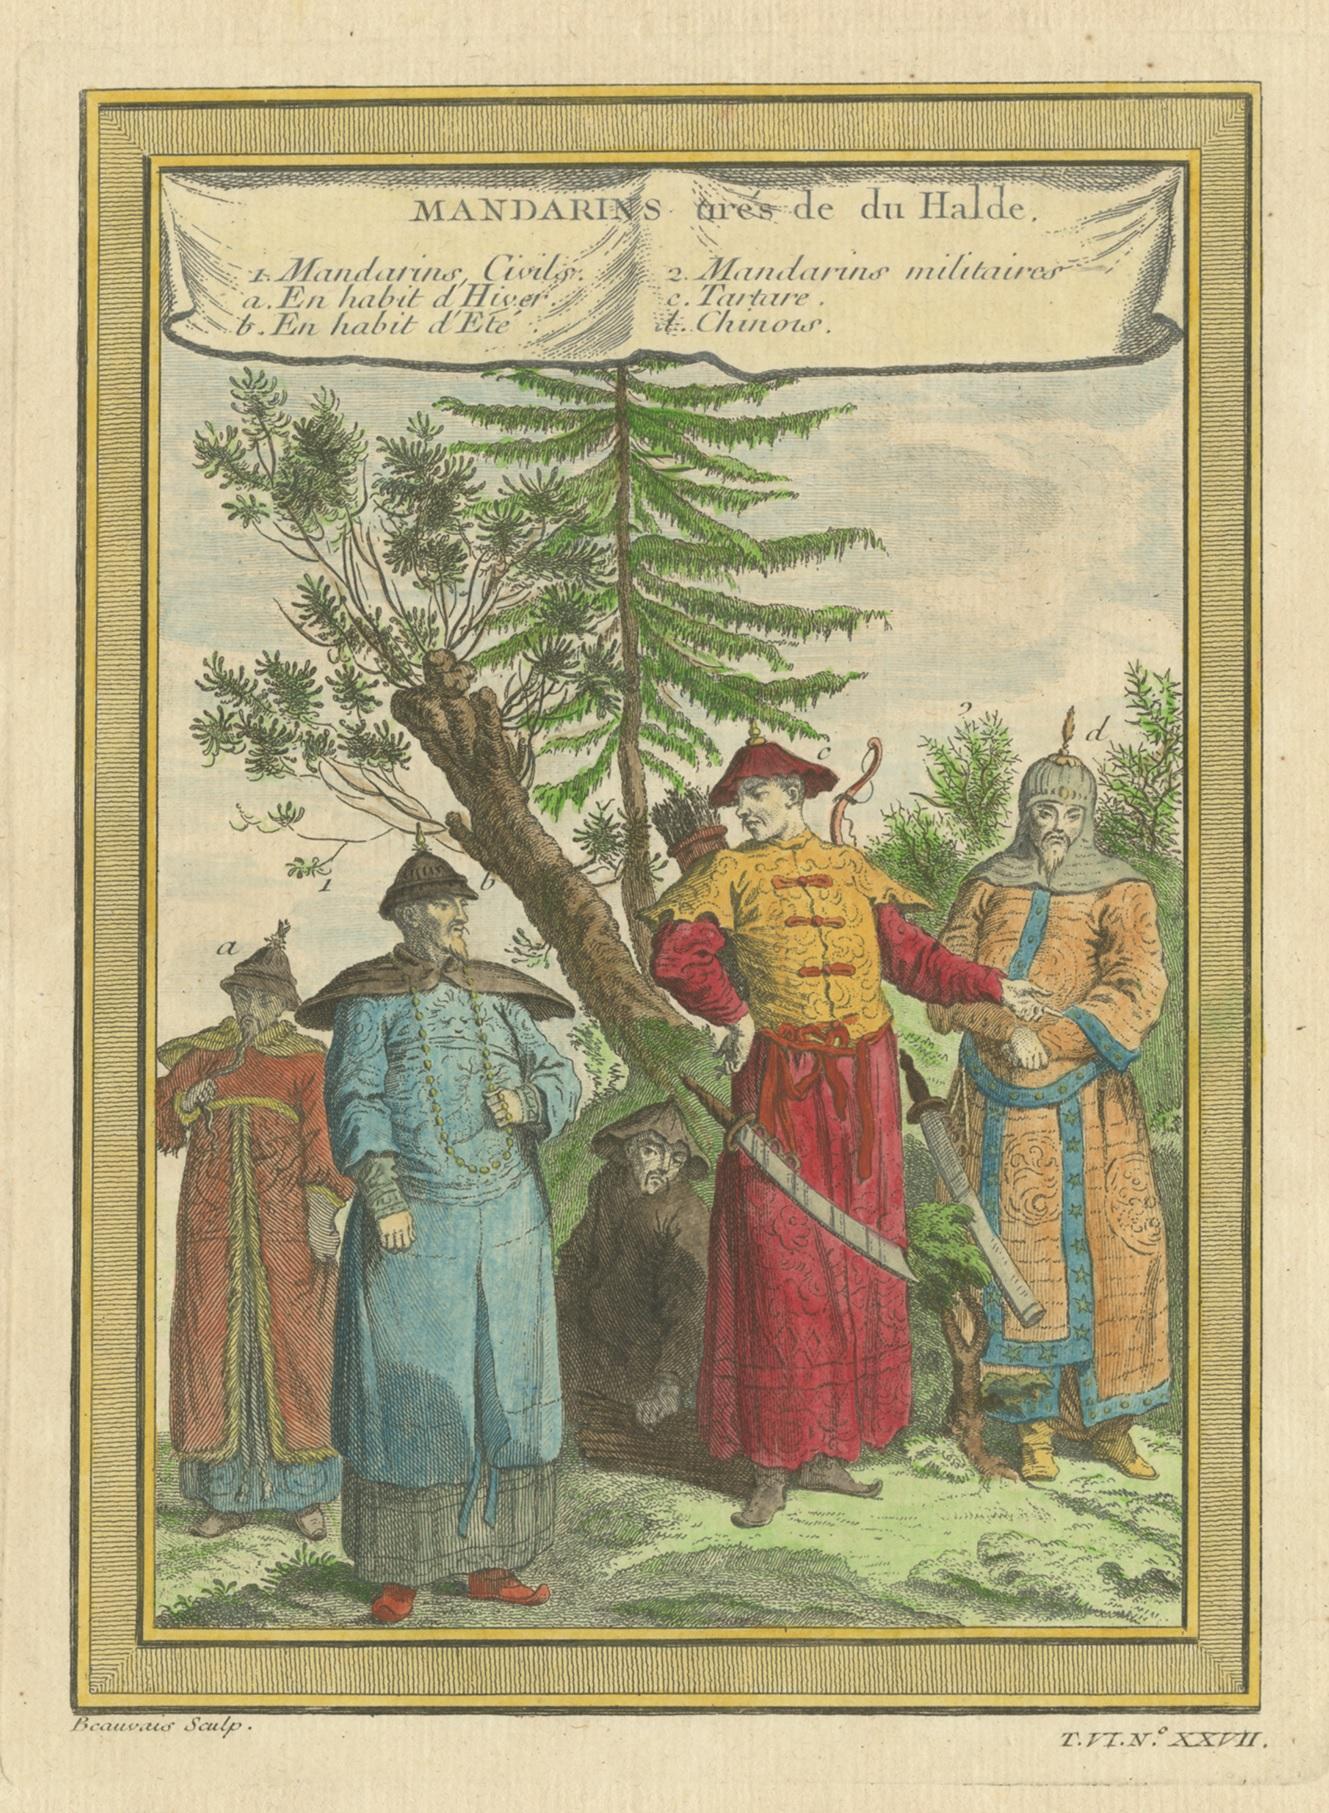 Antique print titled 'Mandarins tirés de du Halde'. Copper engraving of Chinese Mandarins. This print originates from volume 6 of 'Histoire générale des voyages ou nouvelle collection (..)' published by Didot, 1748.